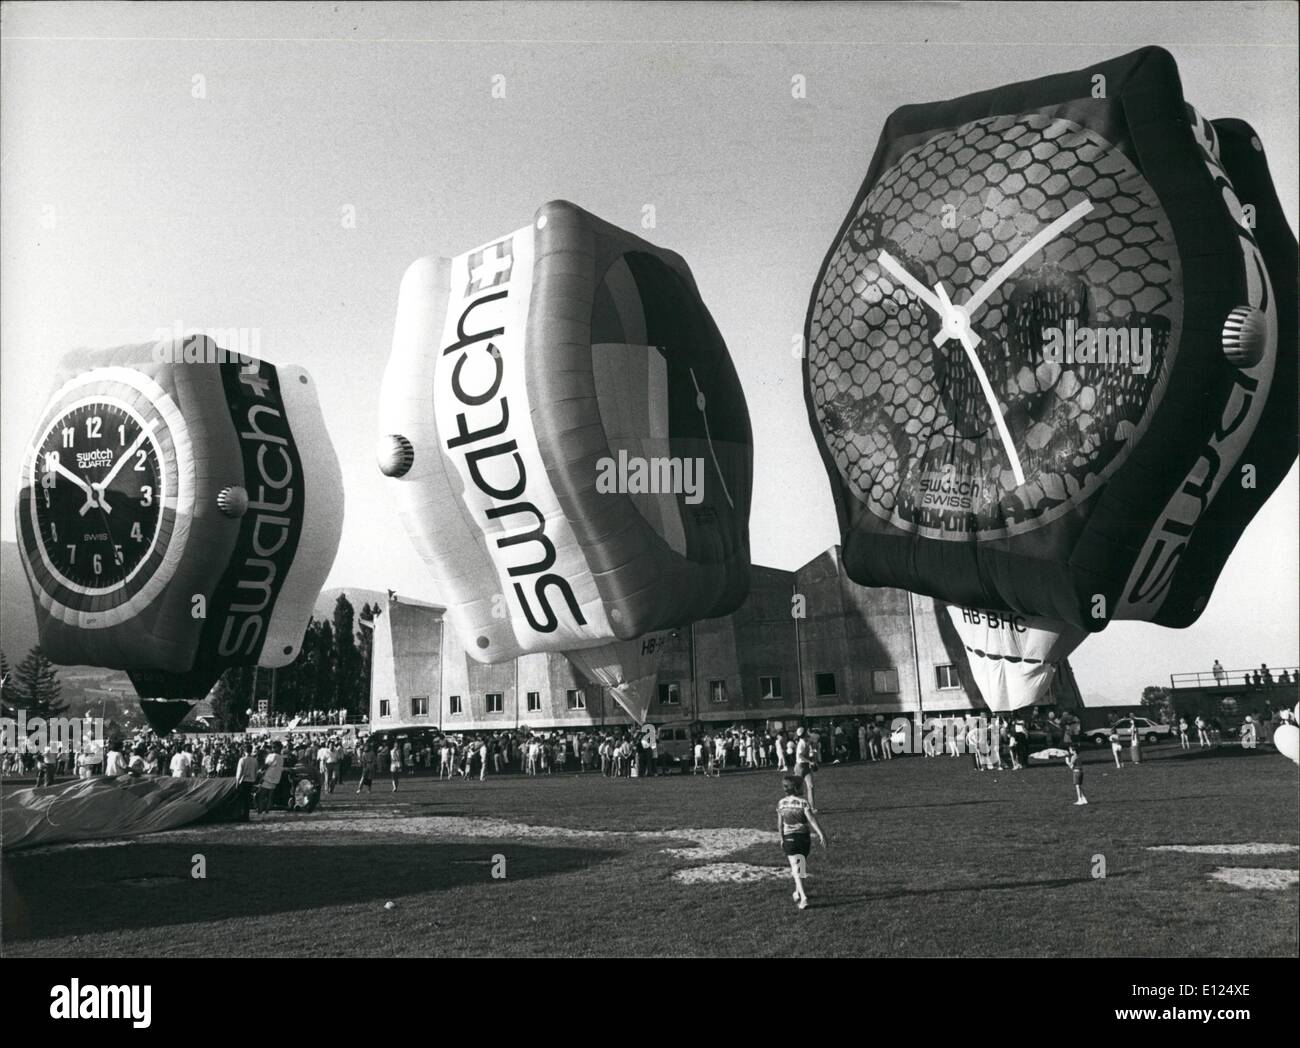 Giugno 06, 1986 - Swatch-palloncini crescente al cielo palloncini giganti in forma di L''Sguarda", abbreviazione di ''Swiss watch'', una alta qualità, ma un prodotto a basso costo dell'industria svizzera, sono state soffiate per la prima volta in un calcio stadion di Grenchen (Cannone di Berna). Prima che la propaganda divertente - palloni sono stati babtized. Foto Stock